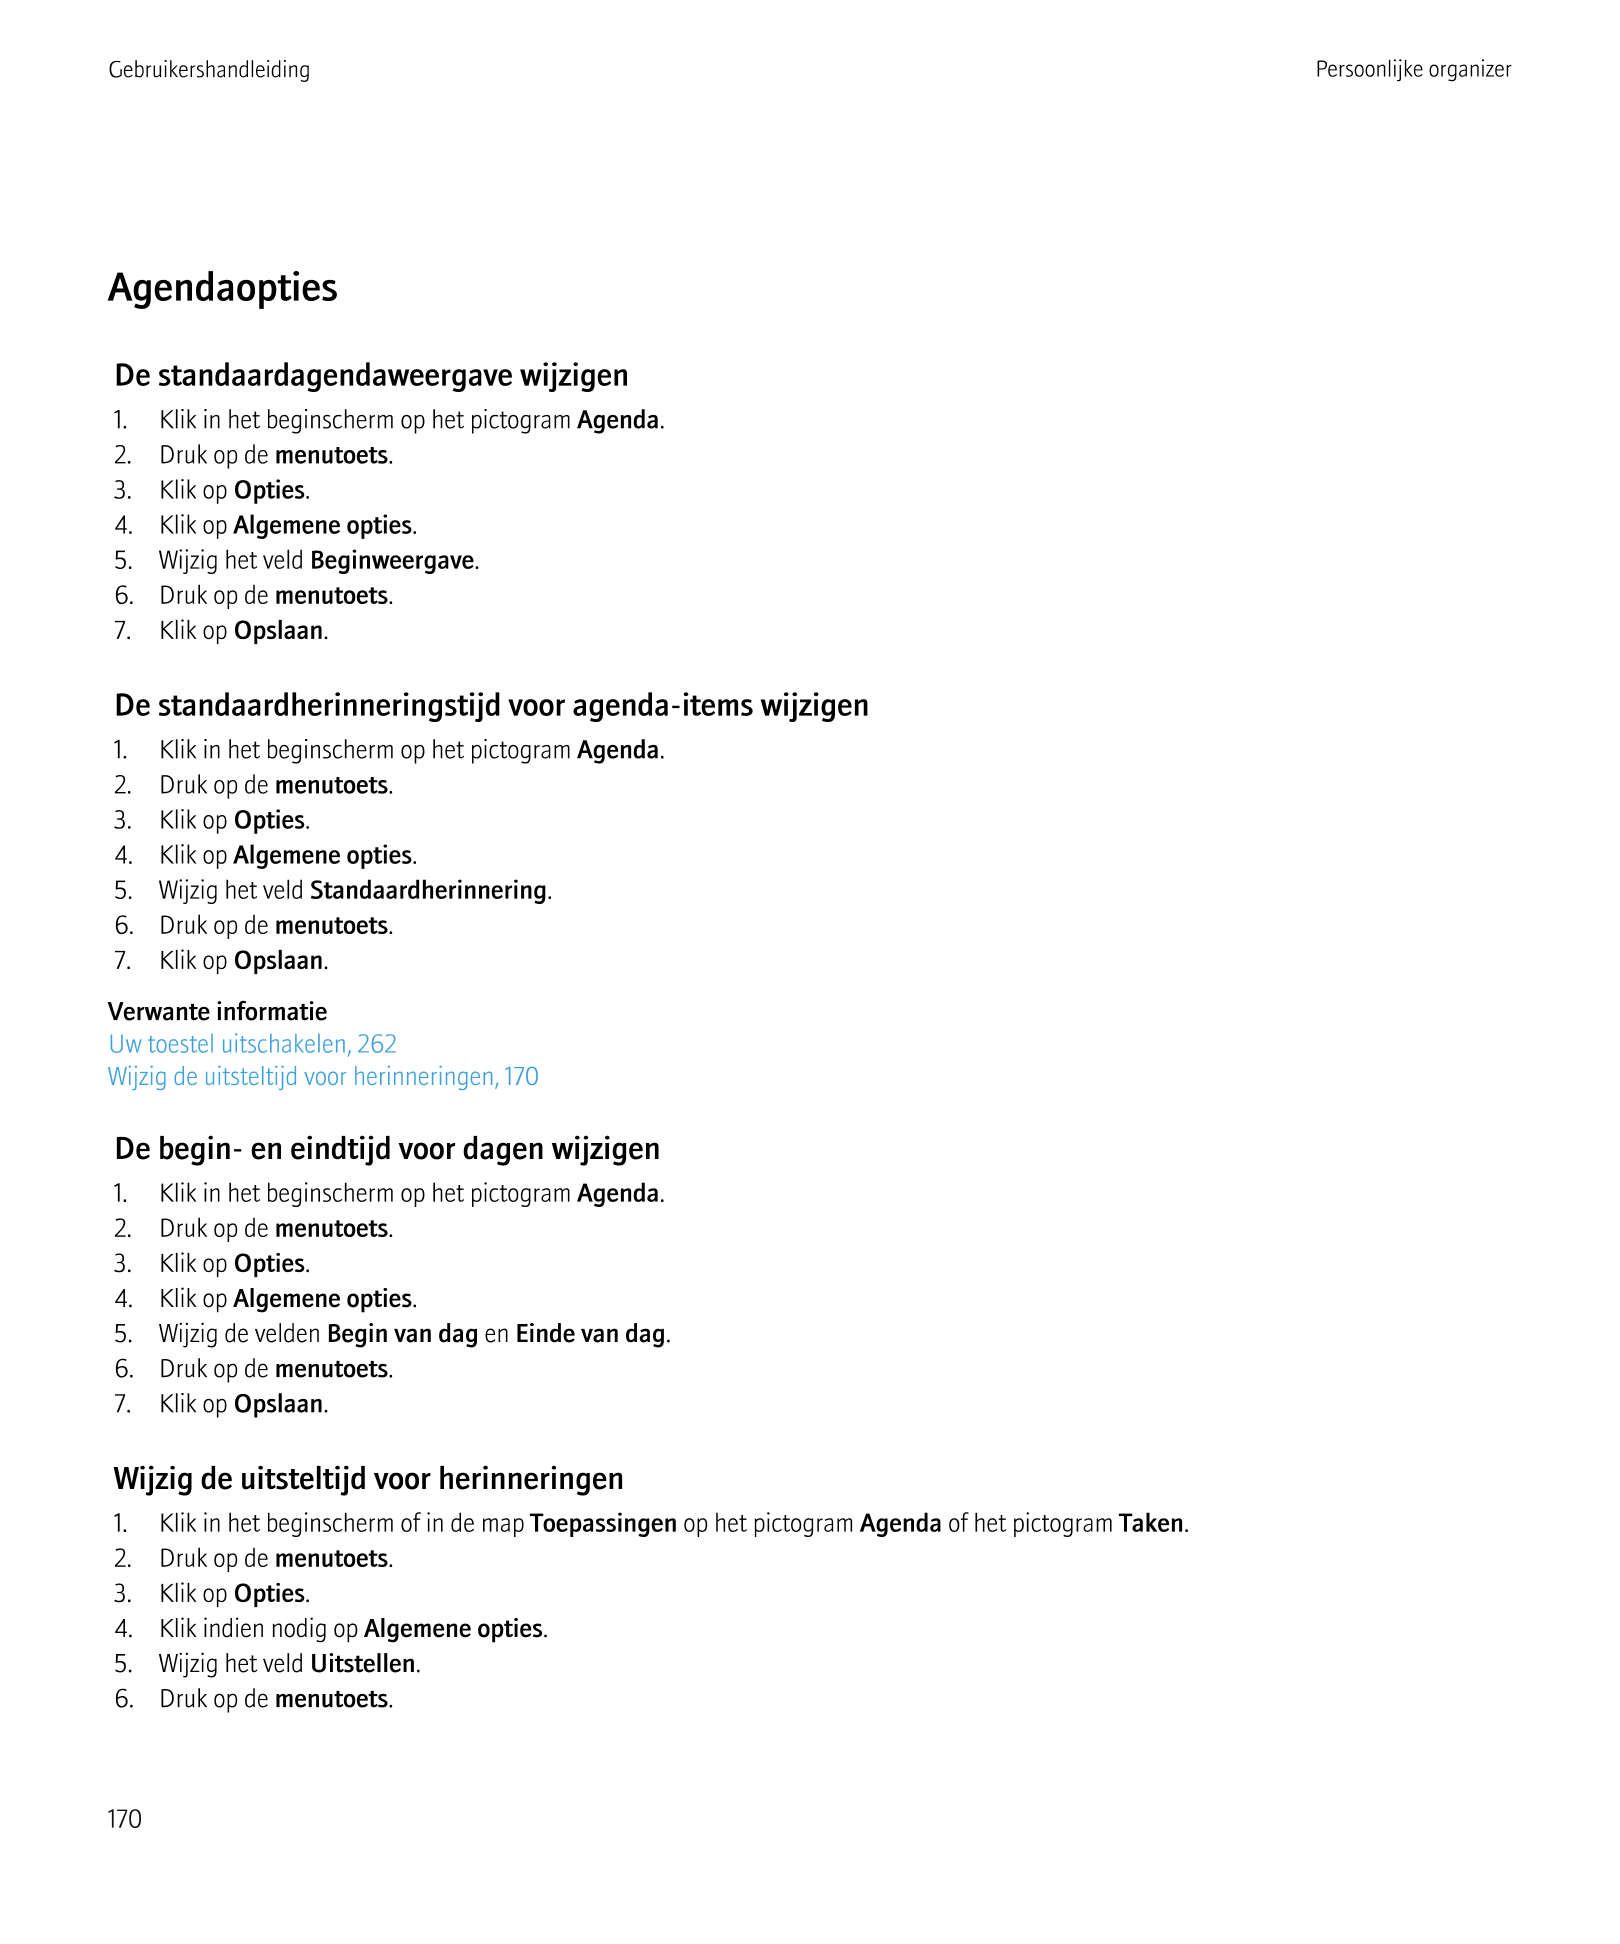 Gebruikershandleiding Persoonlijke organizer
Agendaopties
De standaardagendaweergave wijzigen
1.     Klik in het beginscherm op 